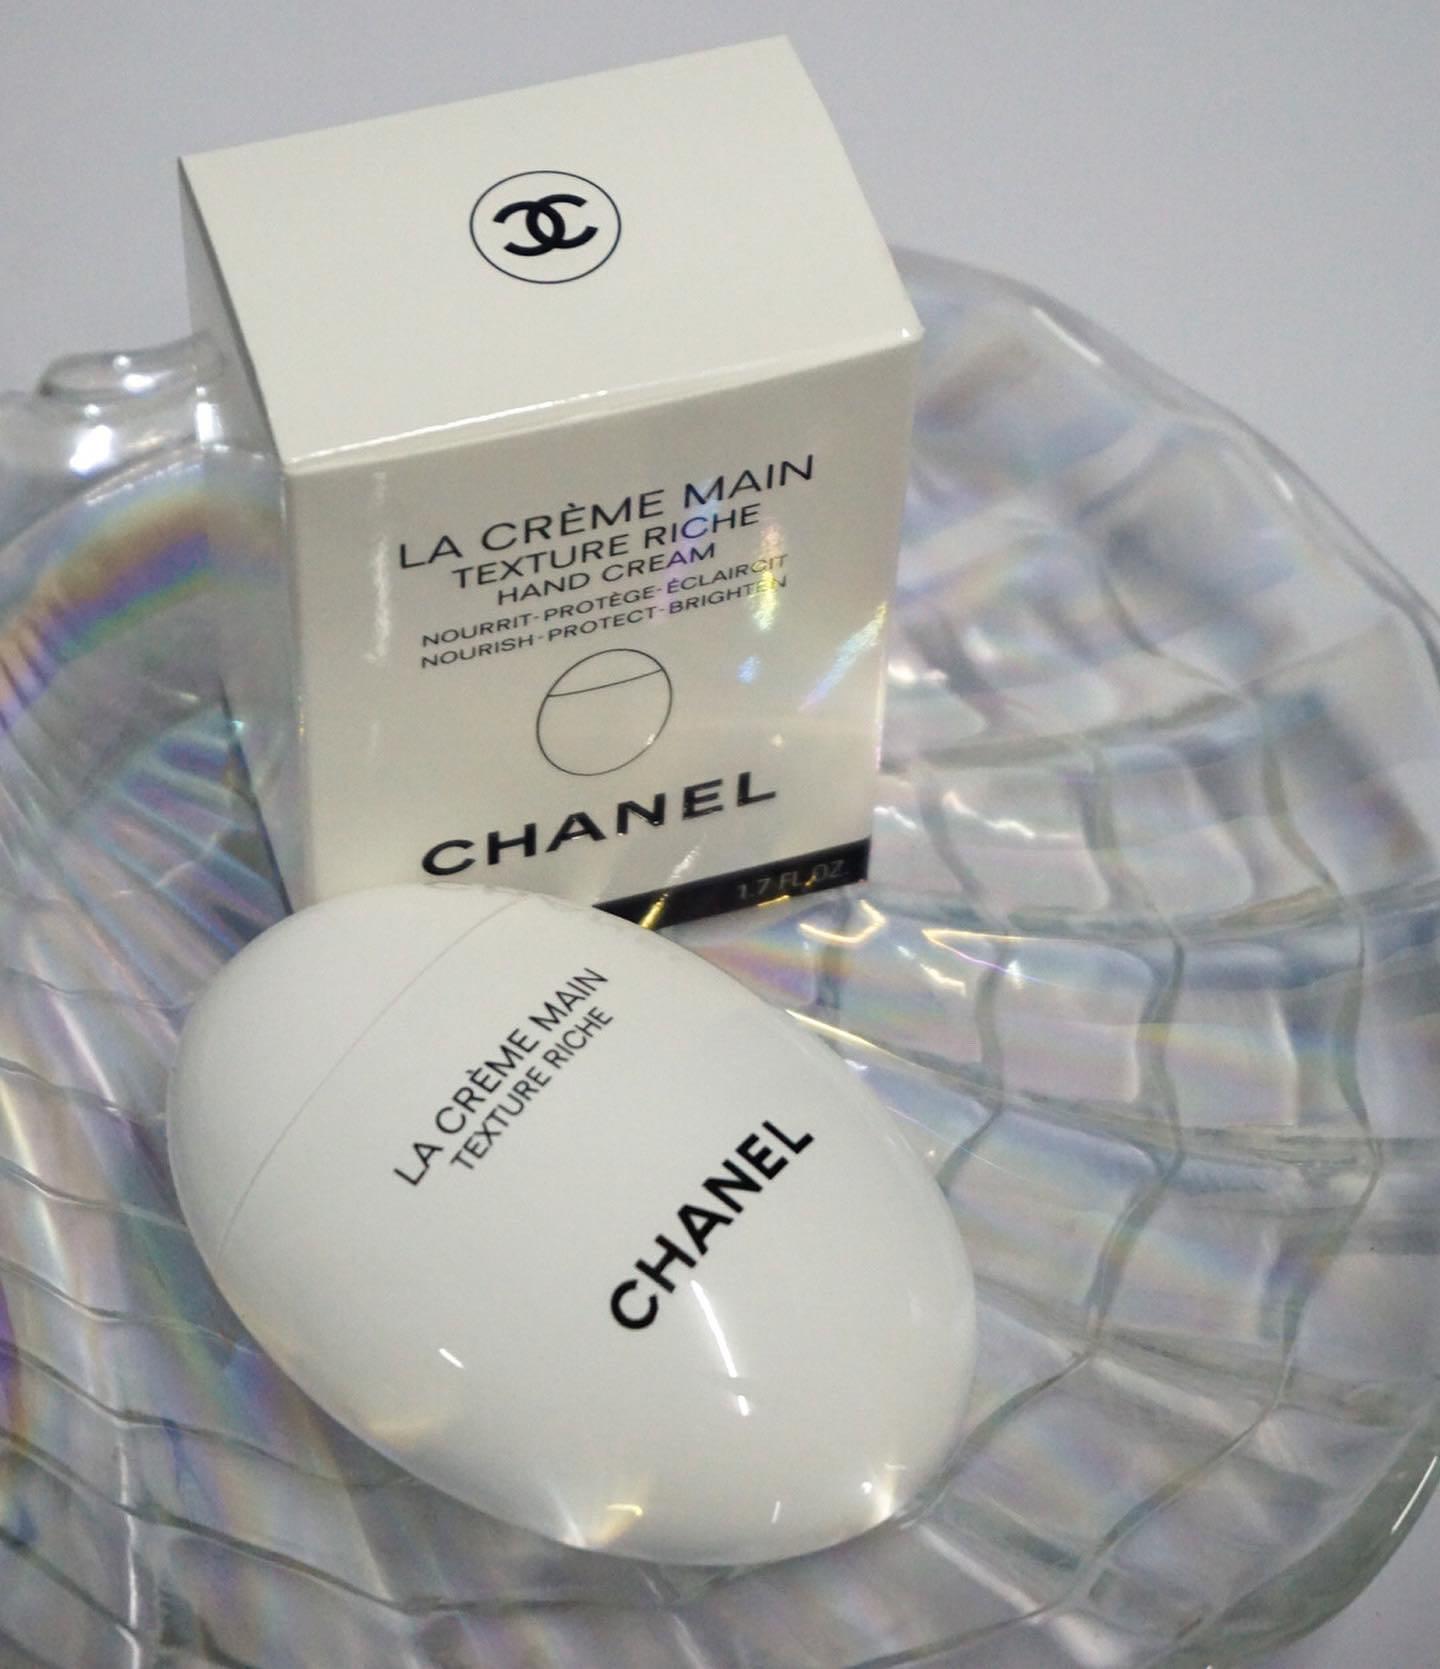 Chanel La Creme Main HAND CREAM Texture Riche 1.7 oz Fast Shipping